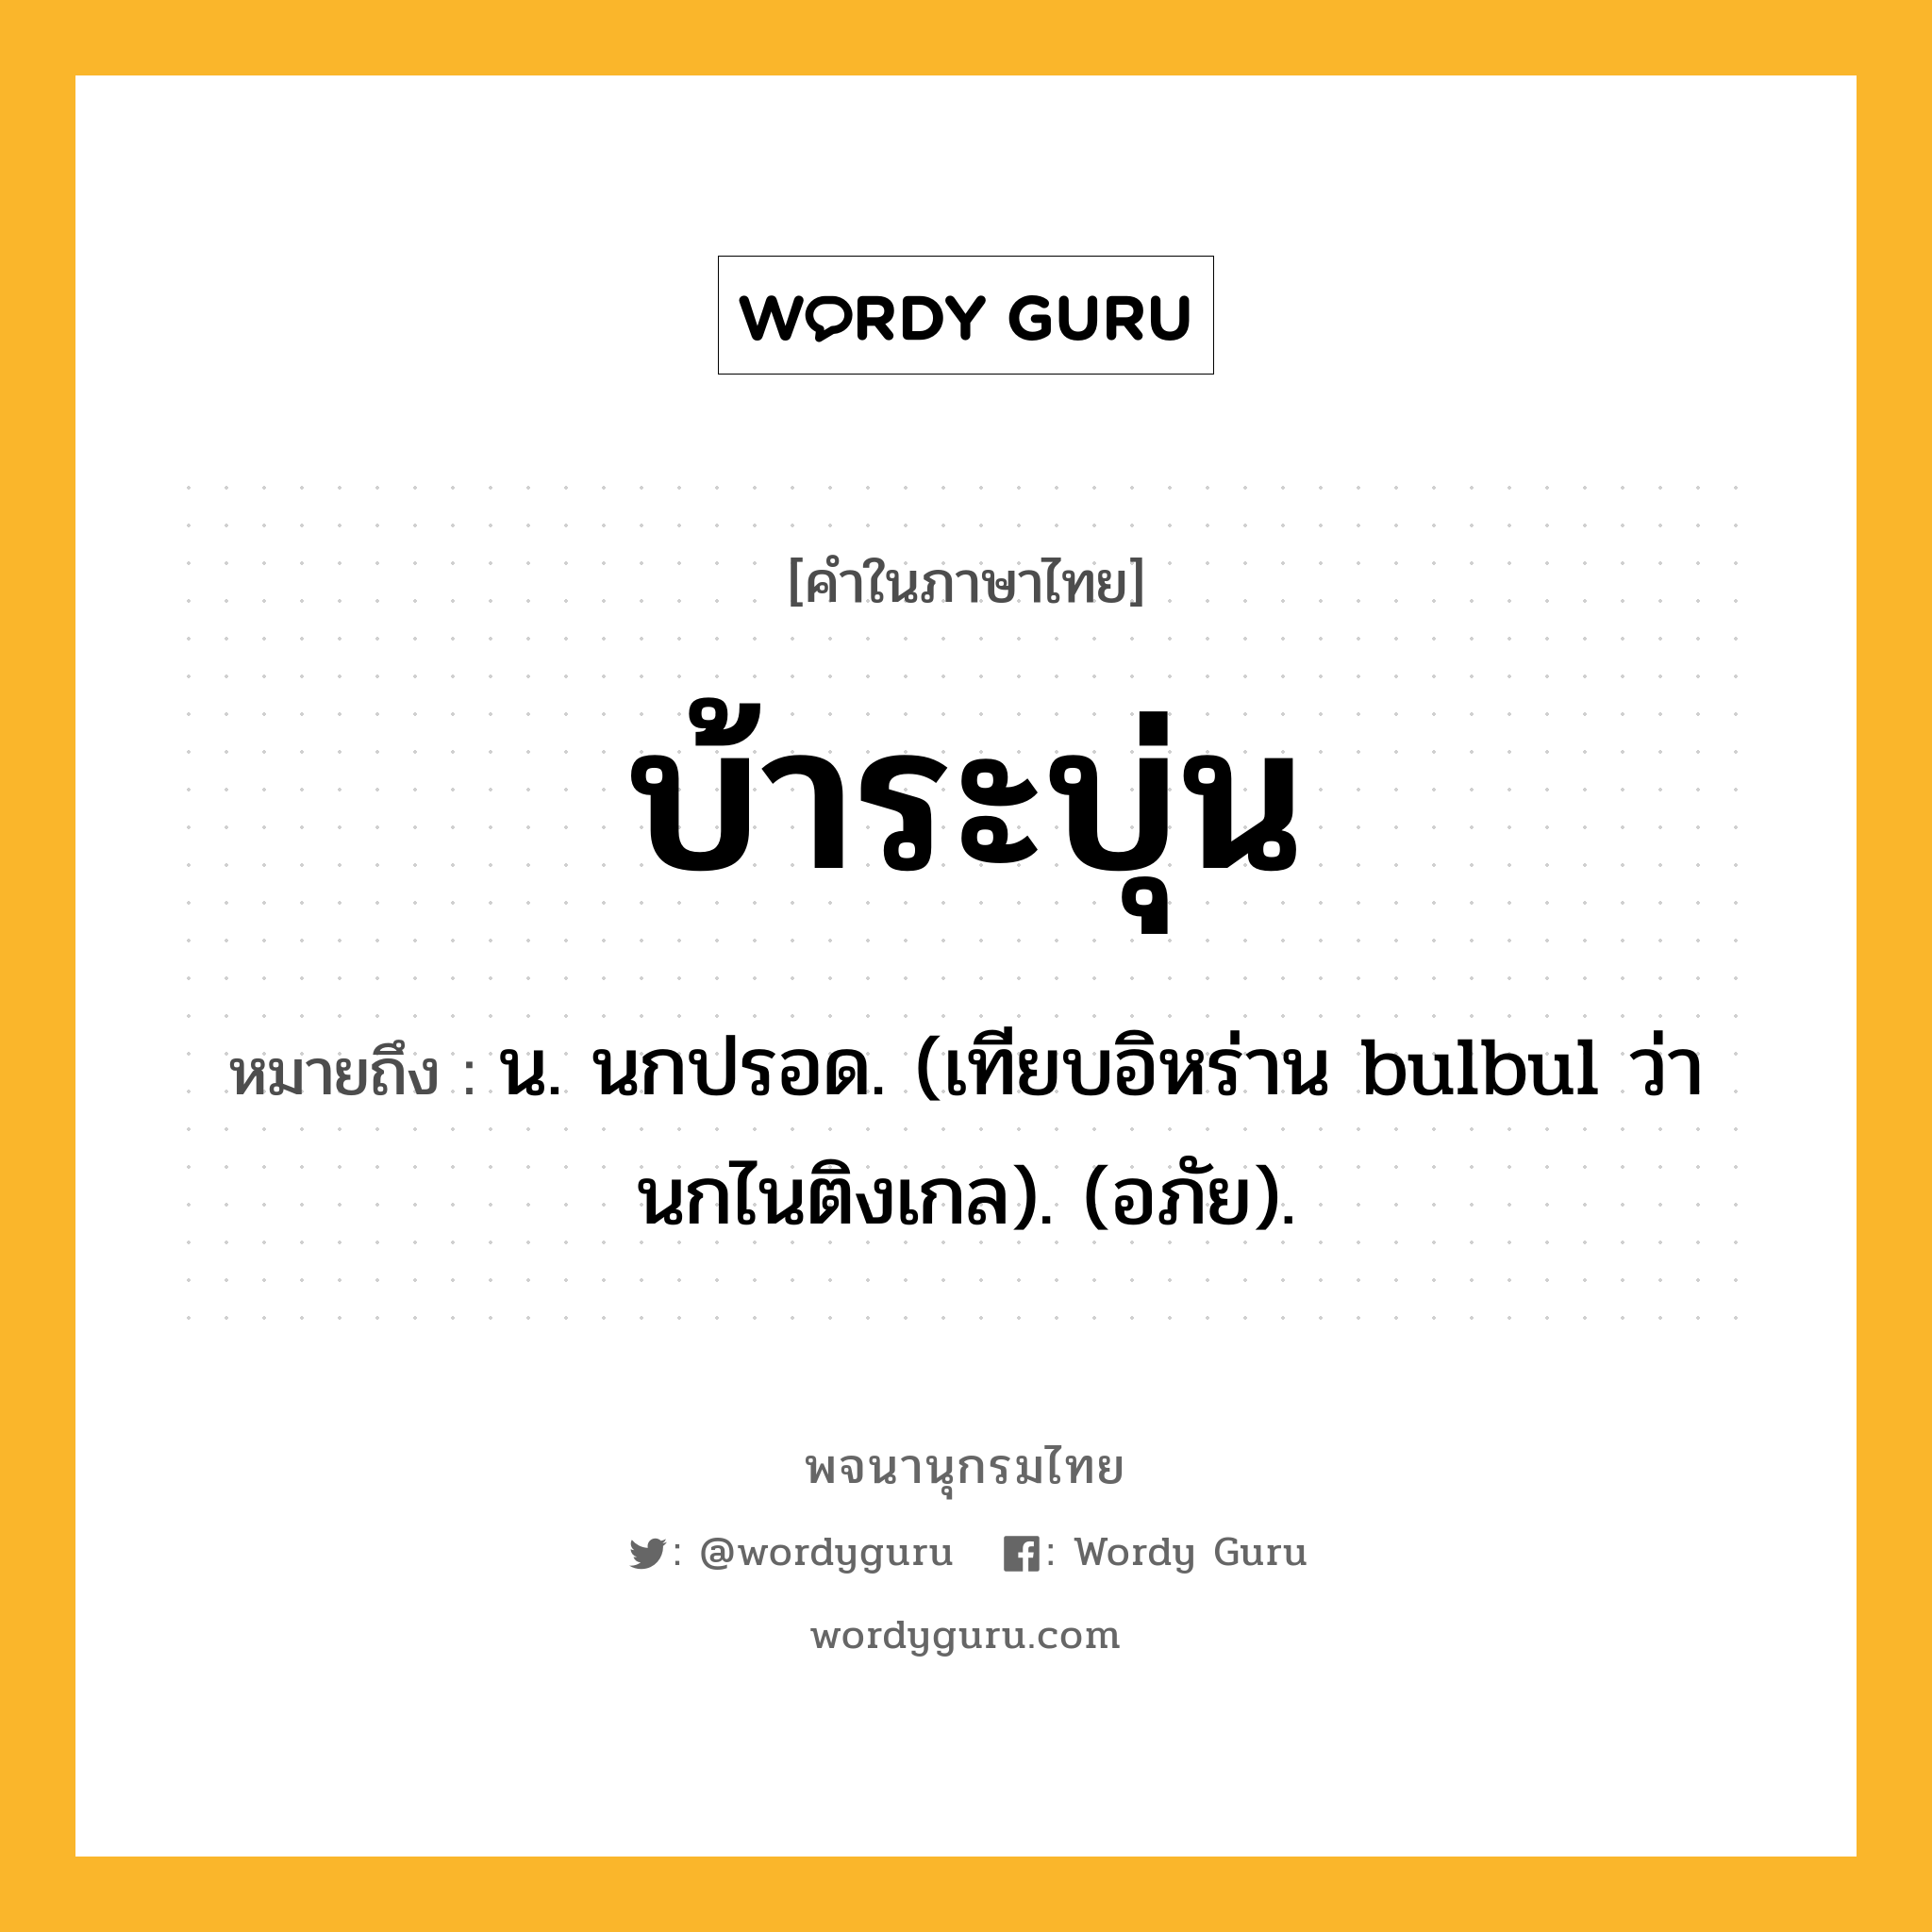 บ้าระบุ่น หมายถึงอะไร?, คำในภาษาไทย บ้าระบุ่น หมายถึง น. นกปรอด. (เทียบอิหร่าน bulbul ว่า นกไนติงเกล). (อภัย).